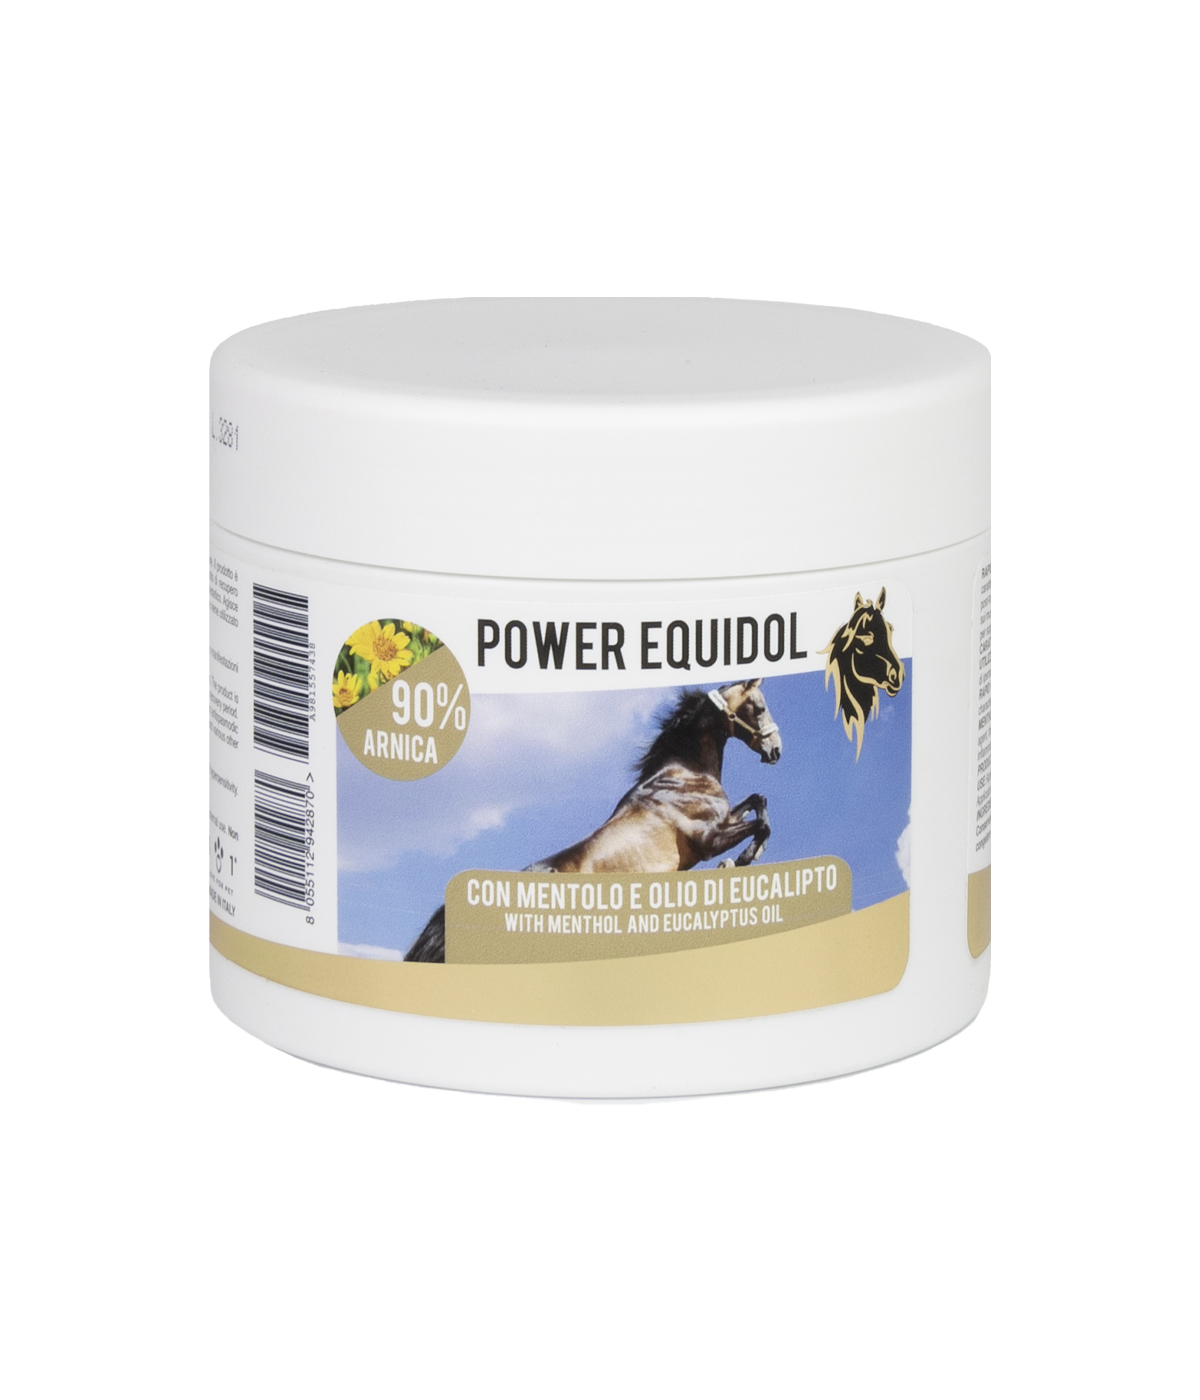 POWER EQUIDOL cream for Horses